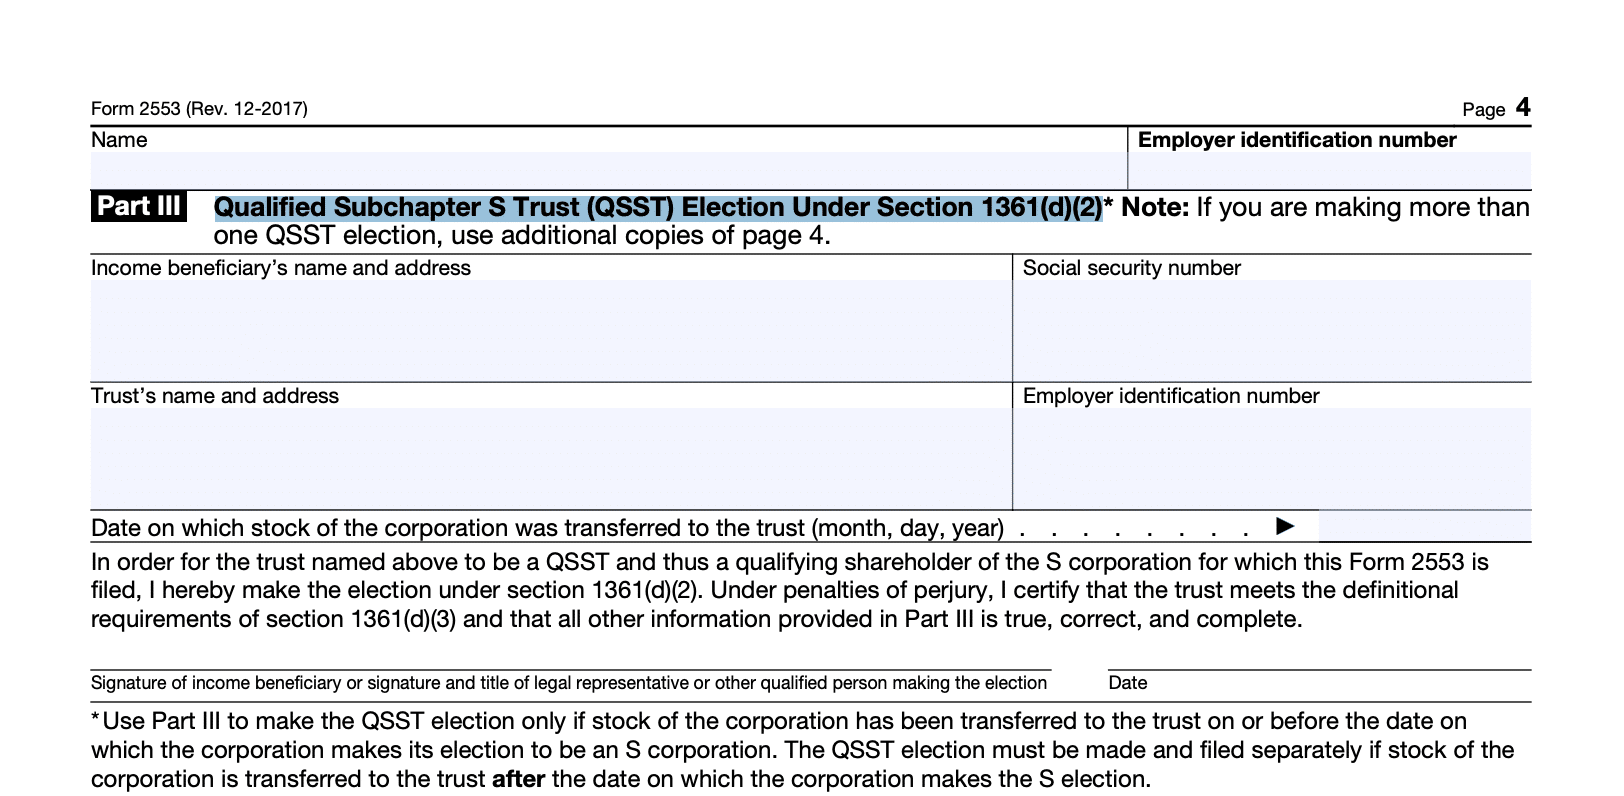 screenshot of part III of form 2553